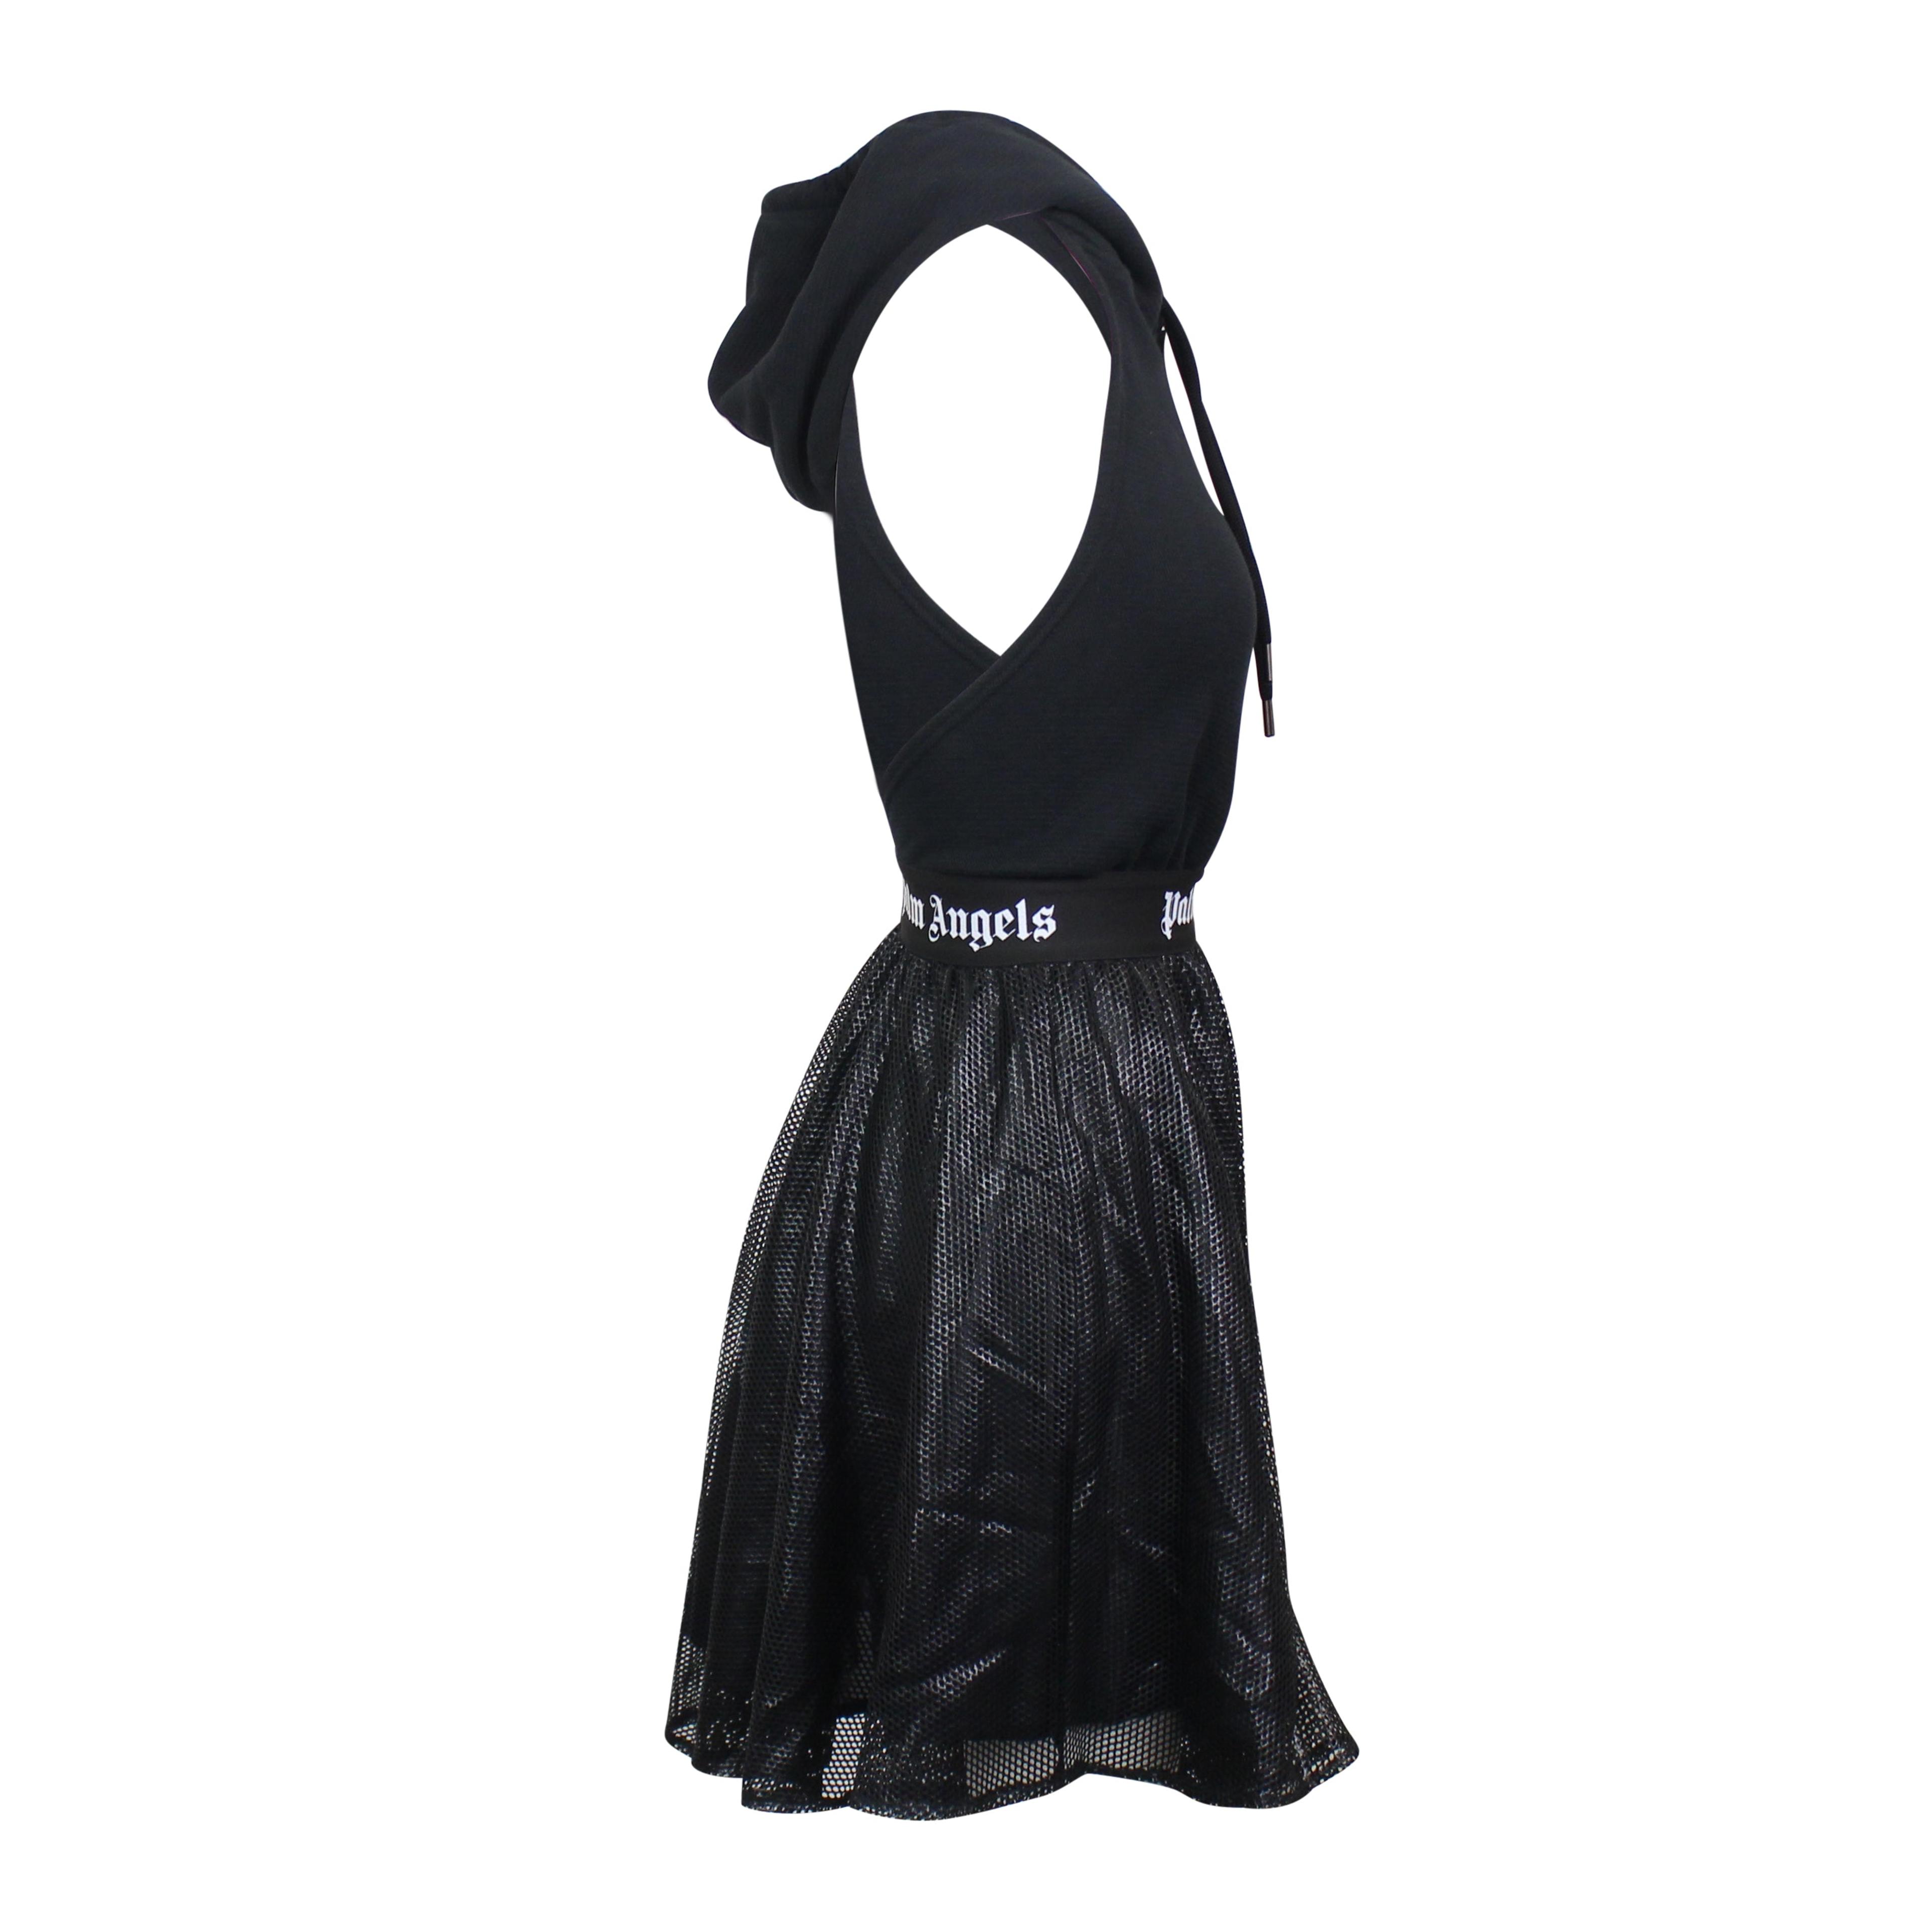 Alternate View 2 of Black Mini Hoodie Dress